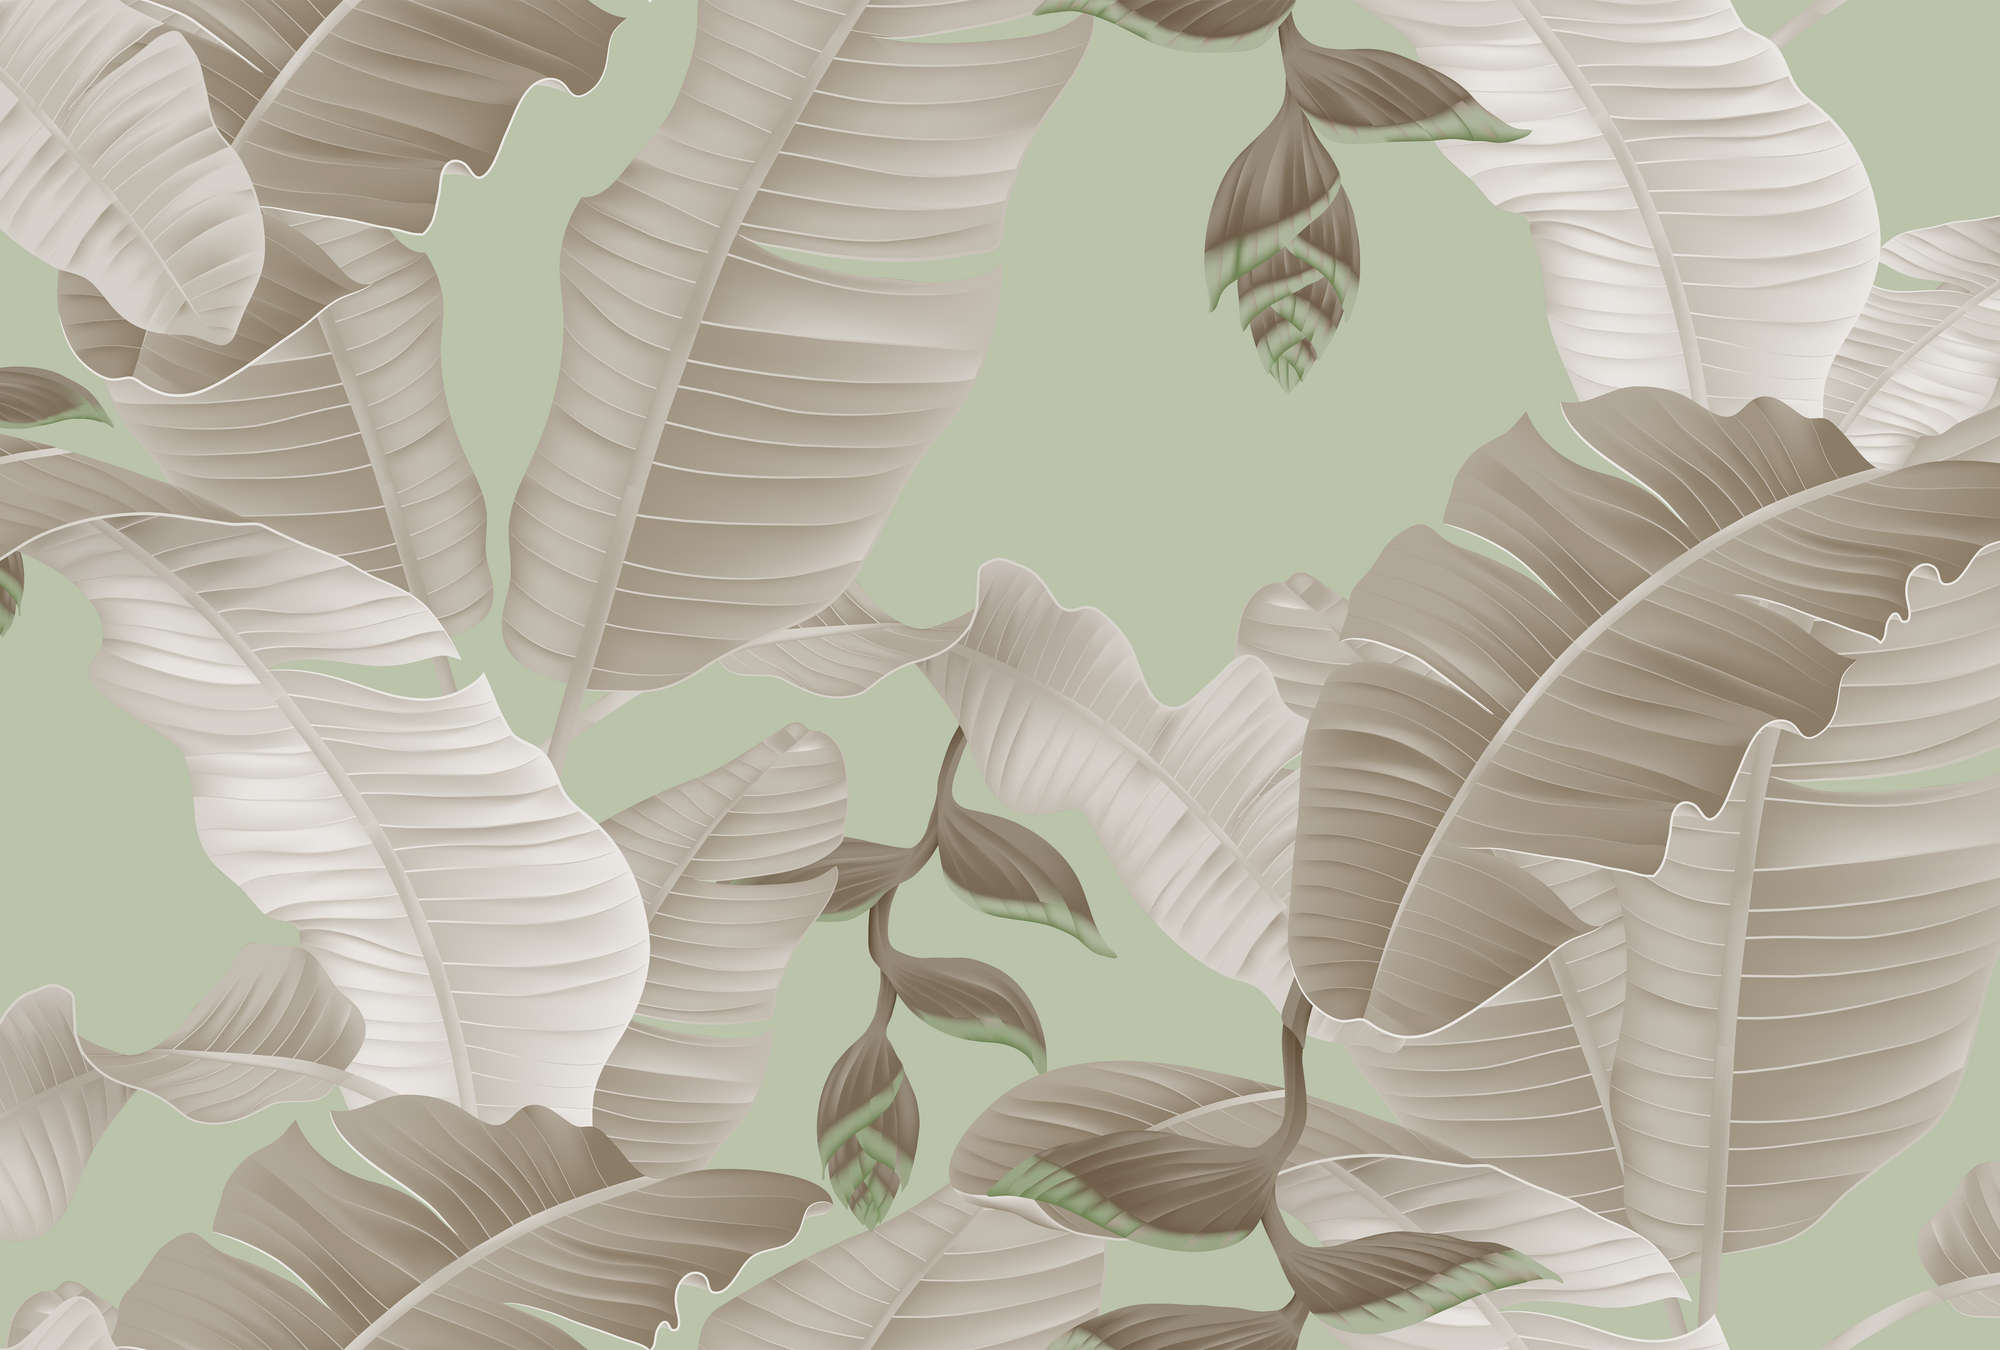             Feuilles de palmier papier peint style graphique - vert, gris
        